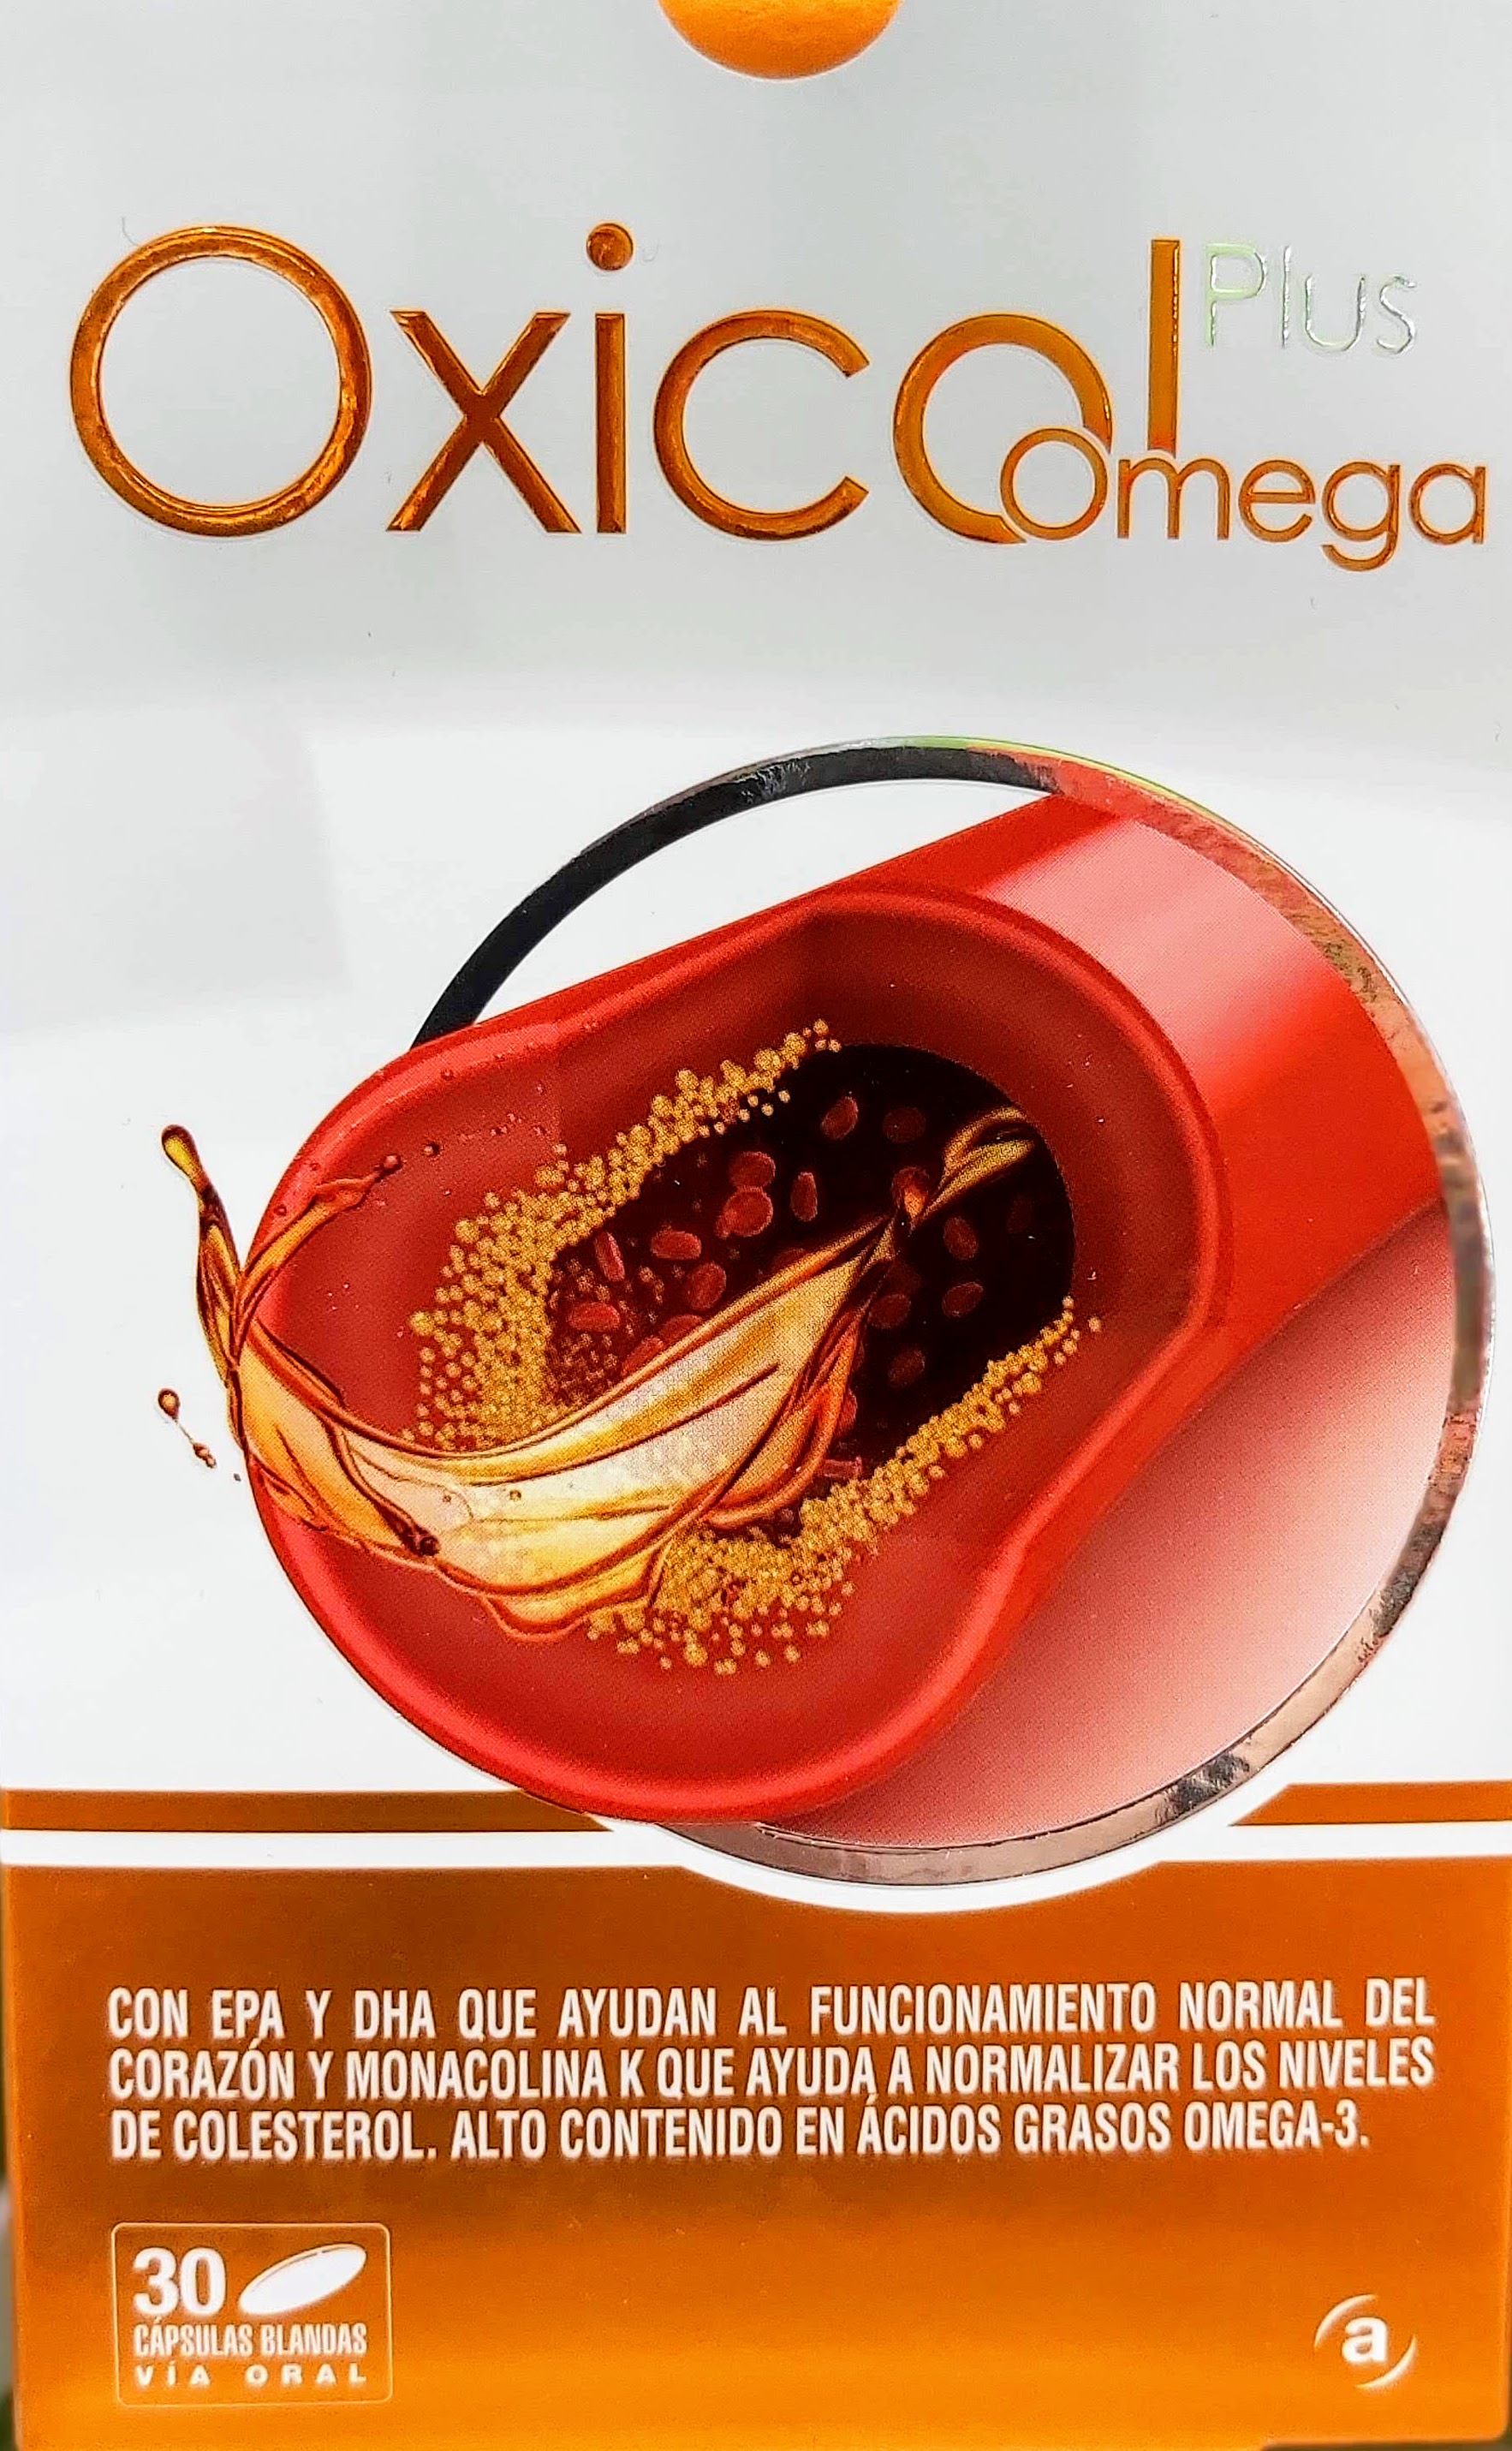 Oxicol Plus Omega reduce no solo el colesterol sino también los triglicéridos en sangre no produce reacciones adversas y es eficaz en 2 meses con sólo una cápsula al día